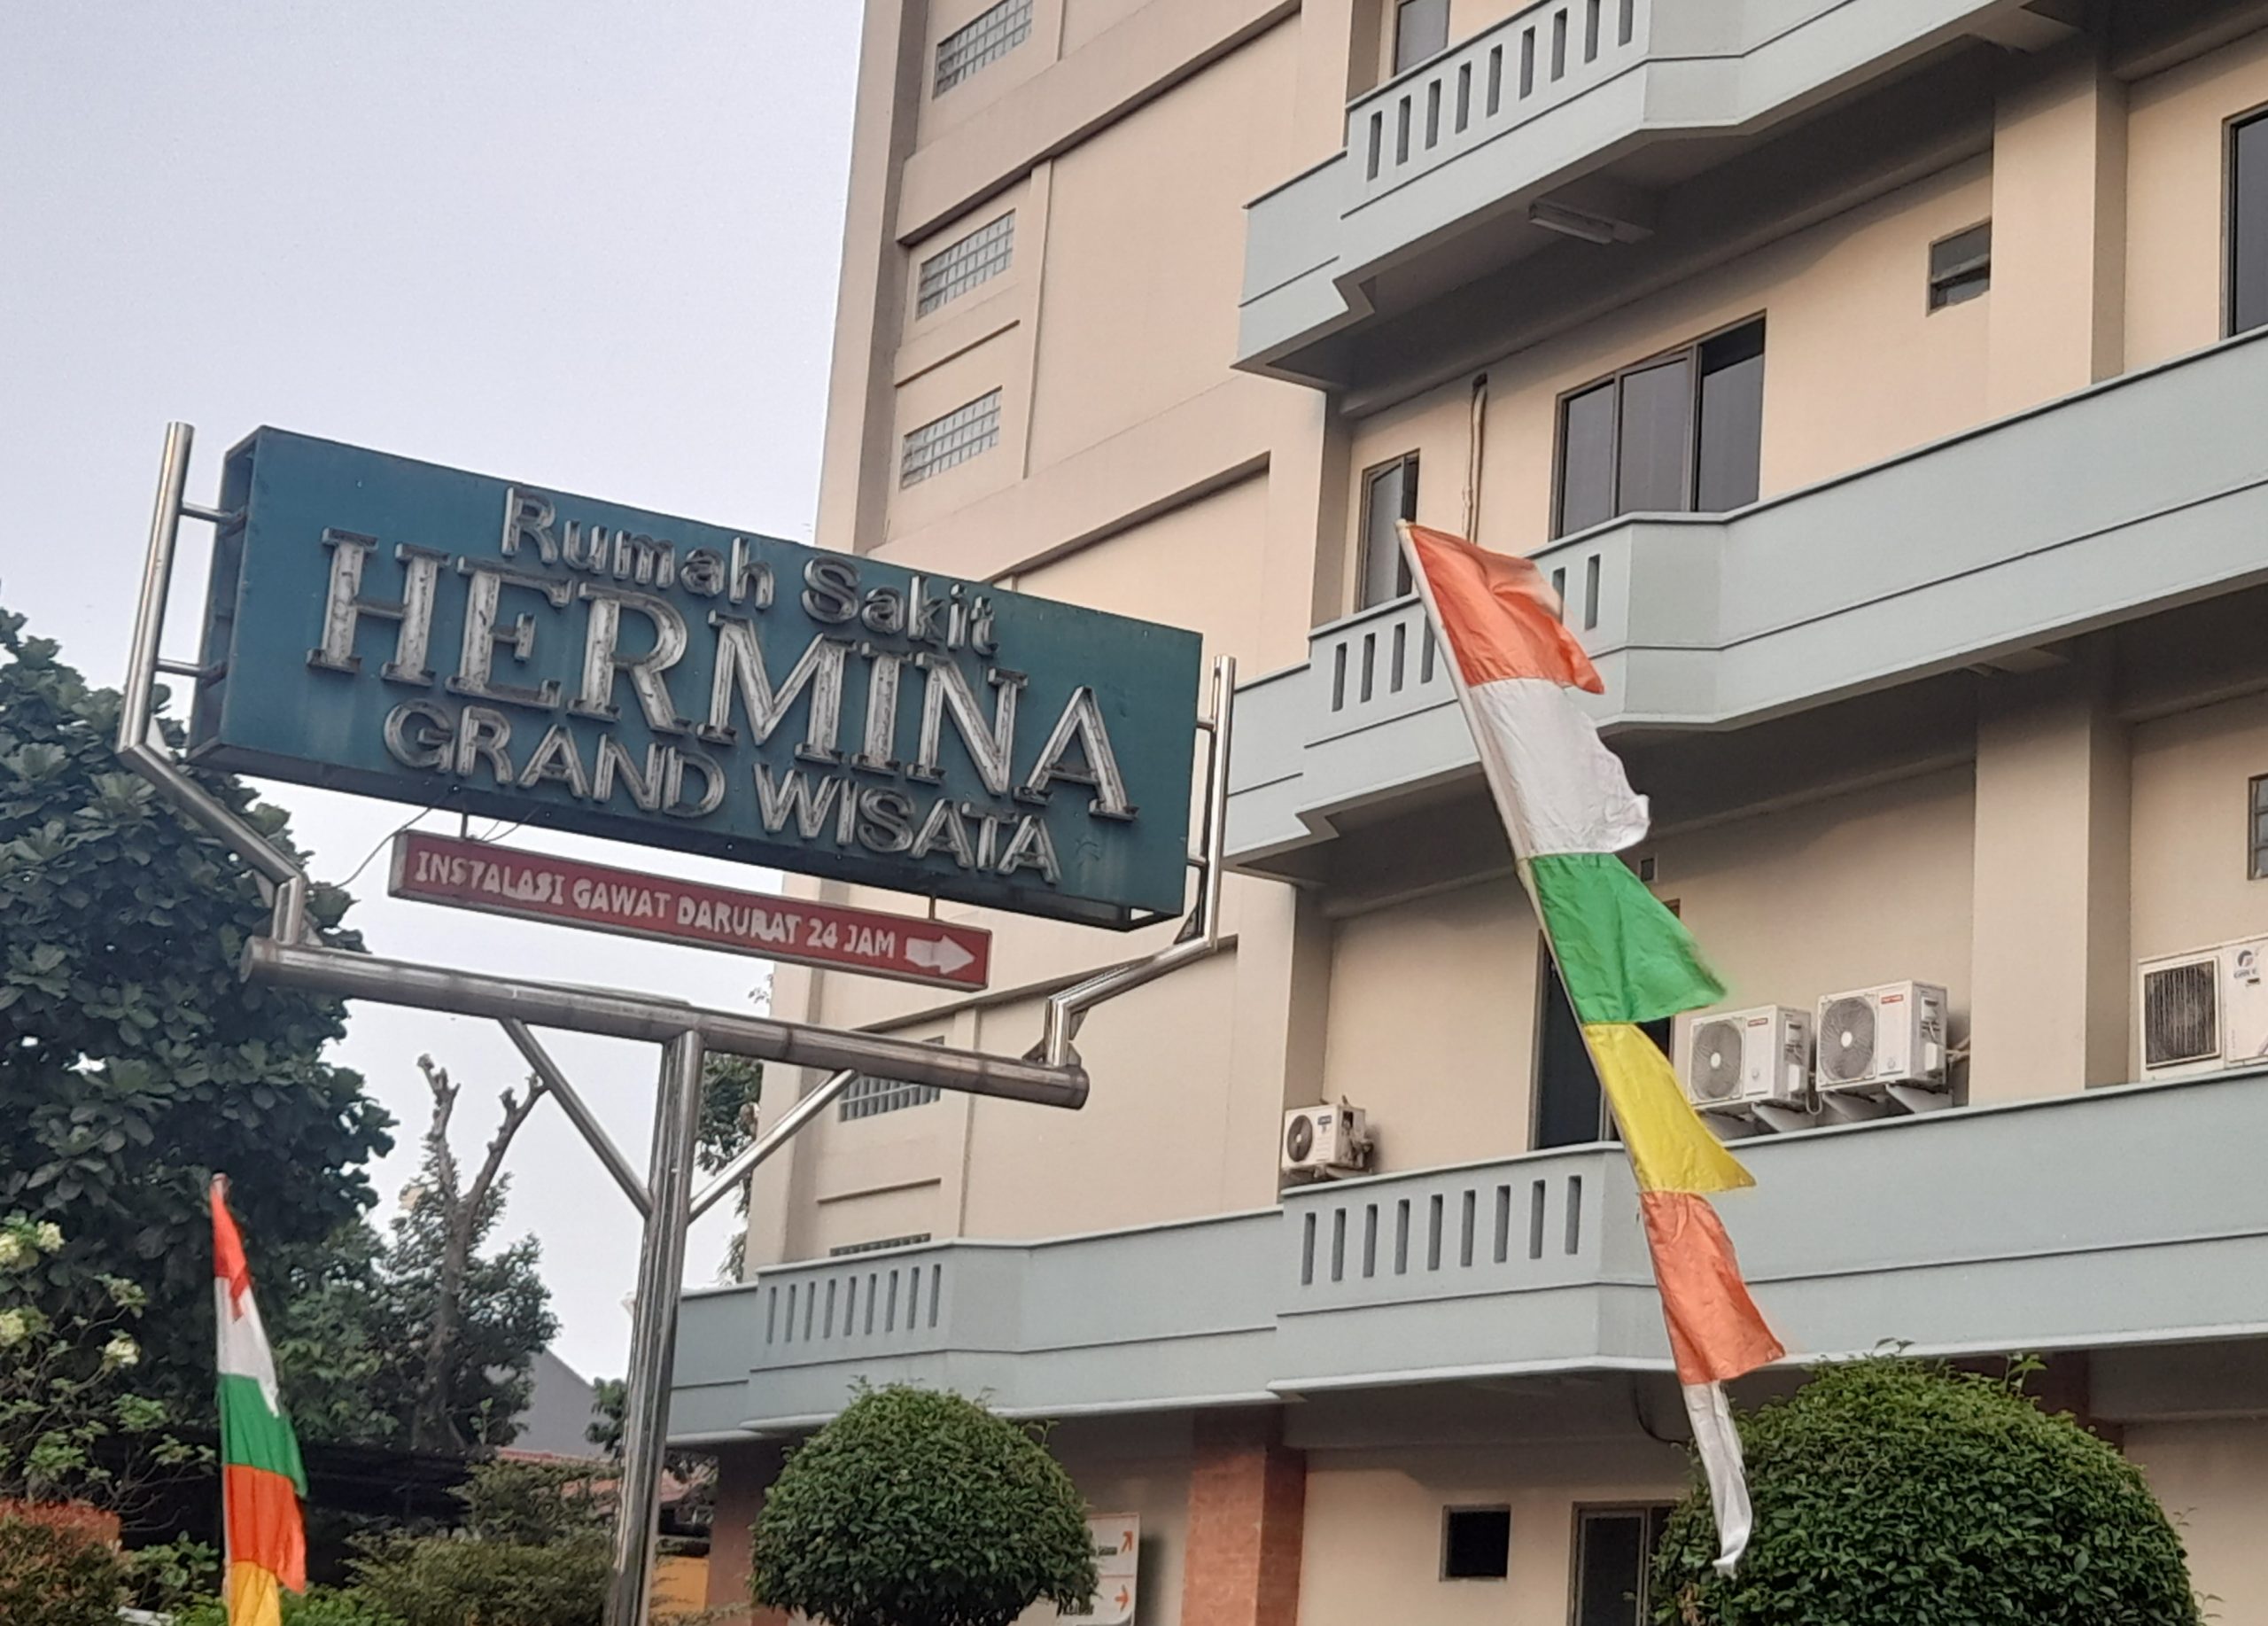 RS Hermina Grand Wisata, Rumah Sakit Terbaik di Cikarang